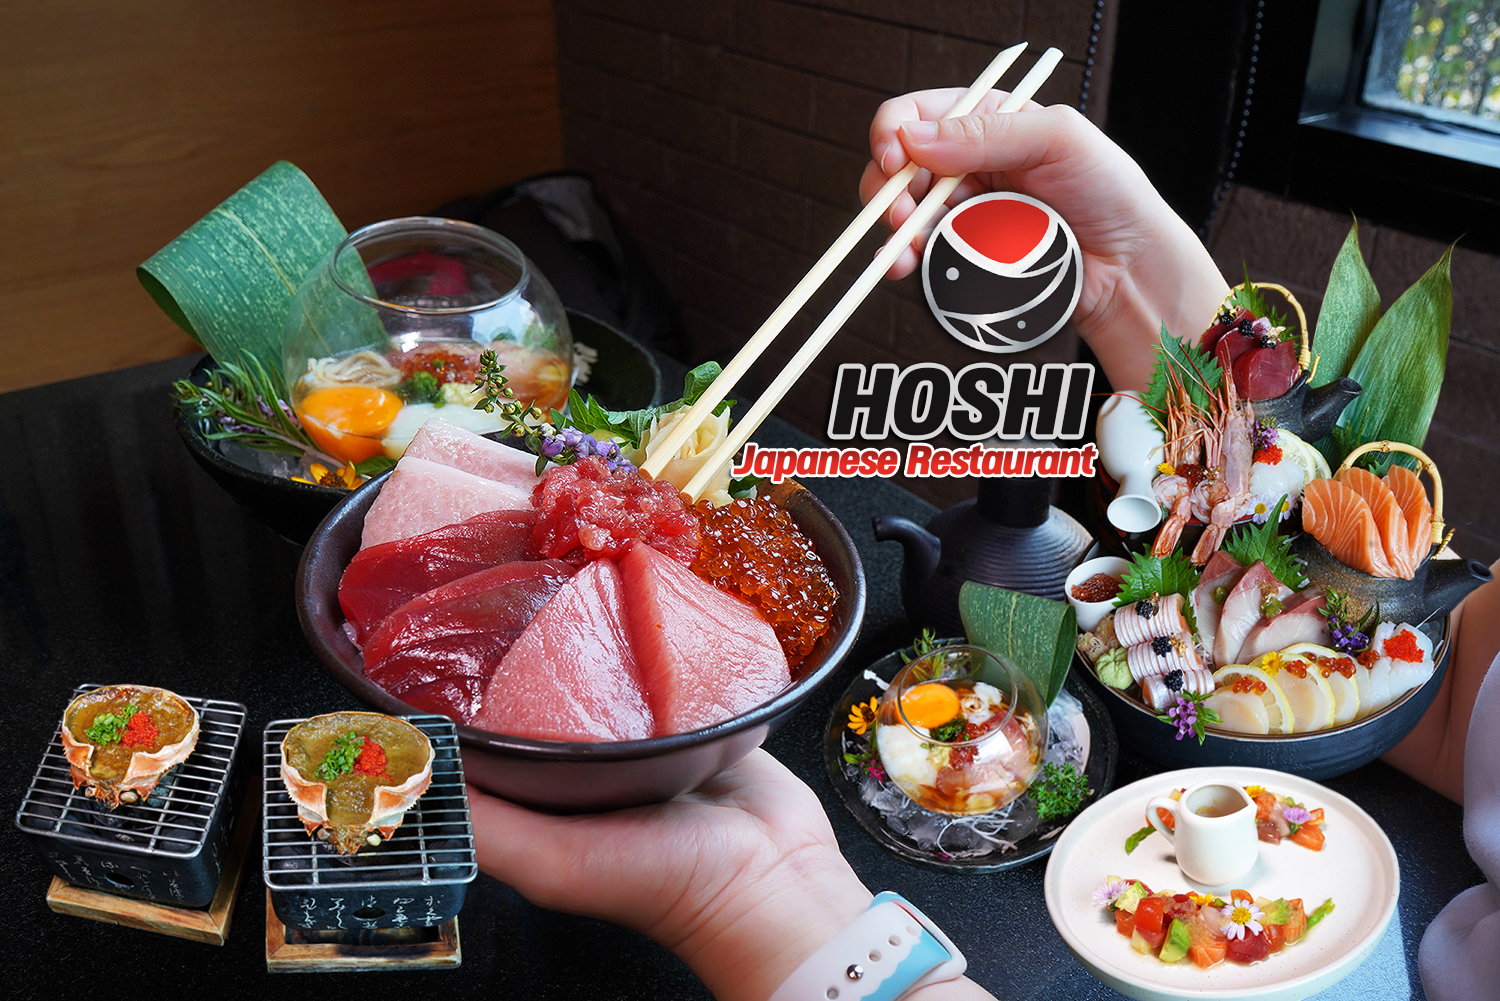 ร้านอาหารญี่ปุ่นสำหรับครอบครัว อาหารสดใหม่ คุณภาพดี๊ดี วัตถุดิบพรีเมี่ยม คุ้มค่า คุ้มราคา พาครอบครัวไปกิน HOSHI Japanese Restaurant กันมั๊ยครับ